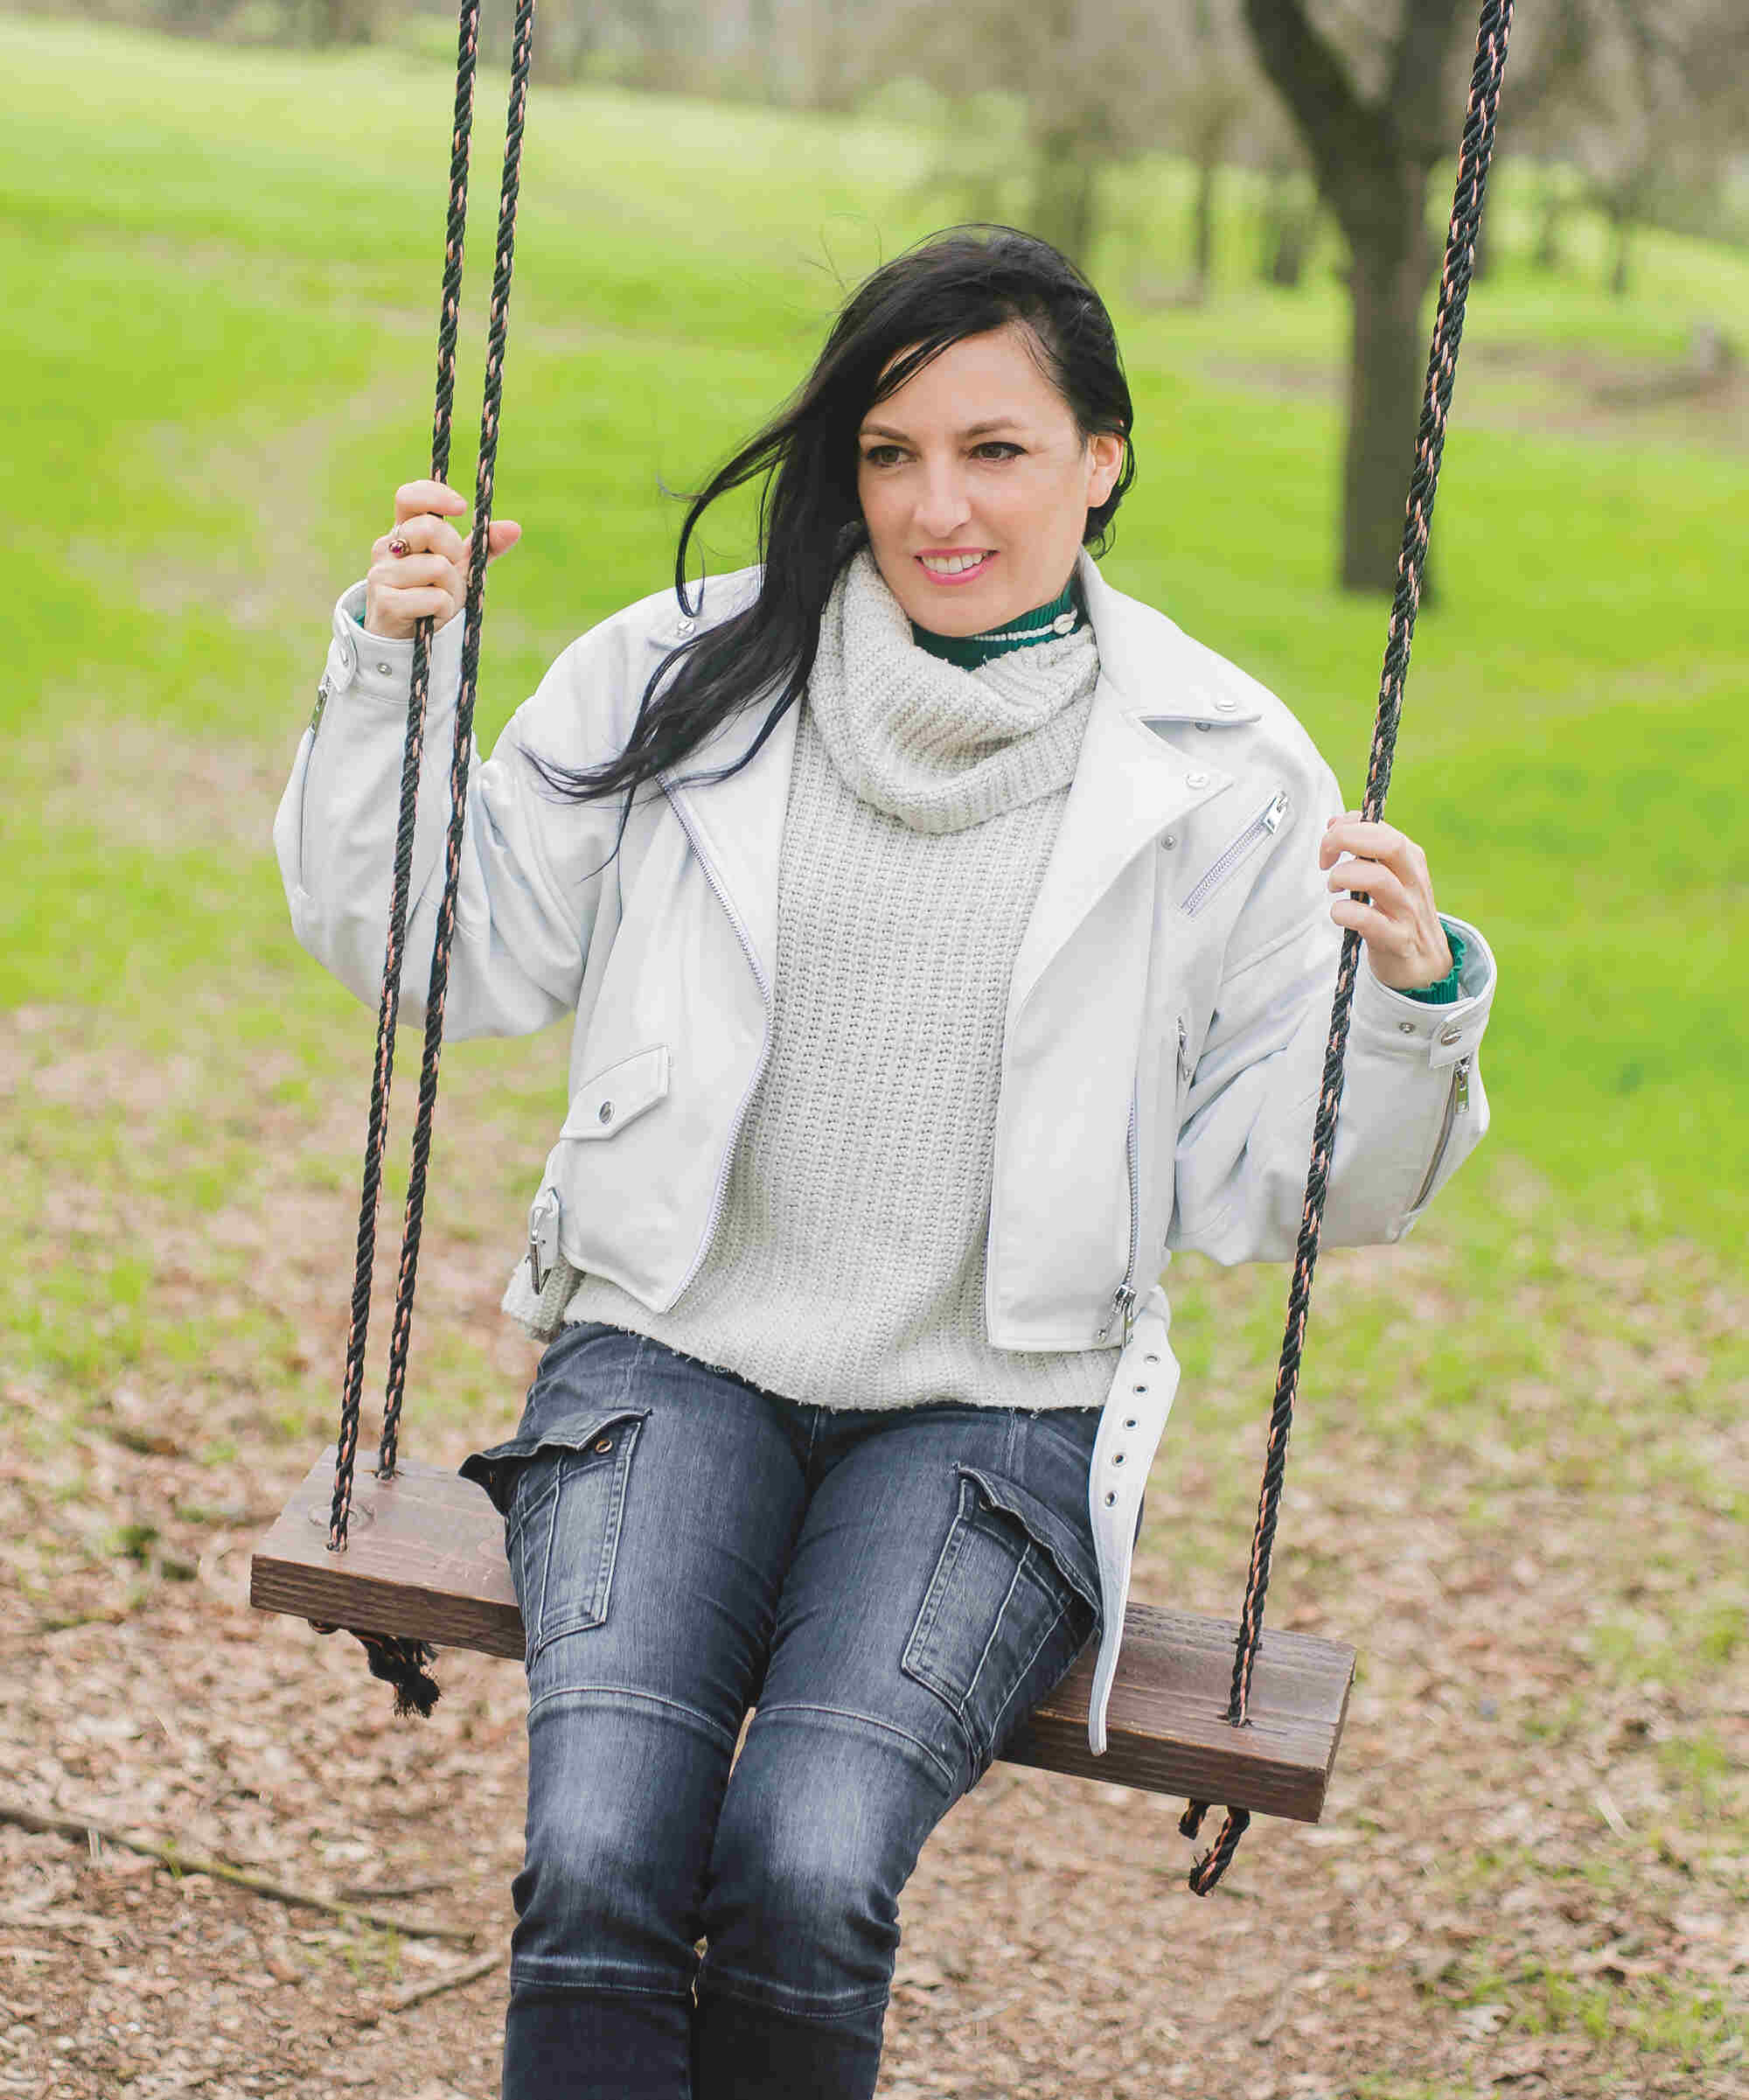 Bernadette Szilvasy sitting on a swing